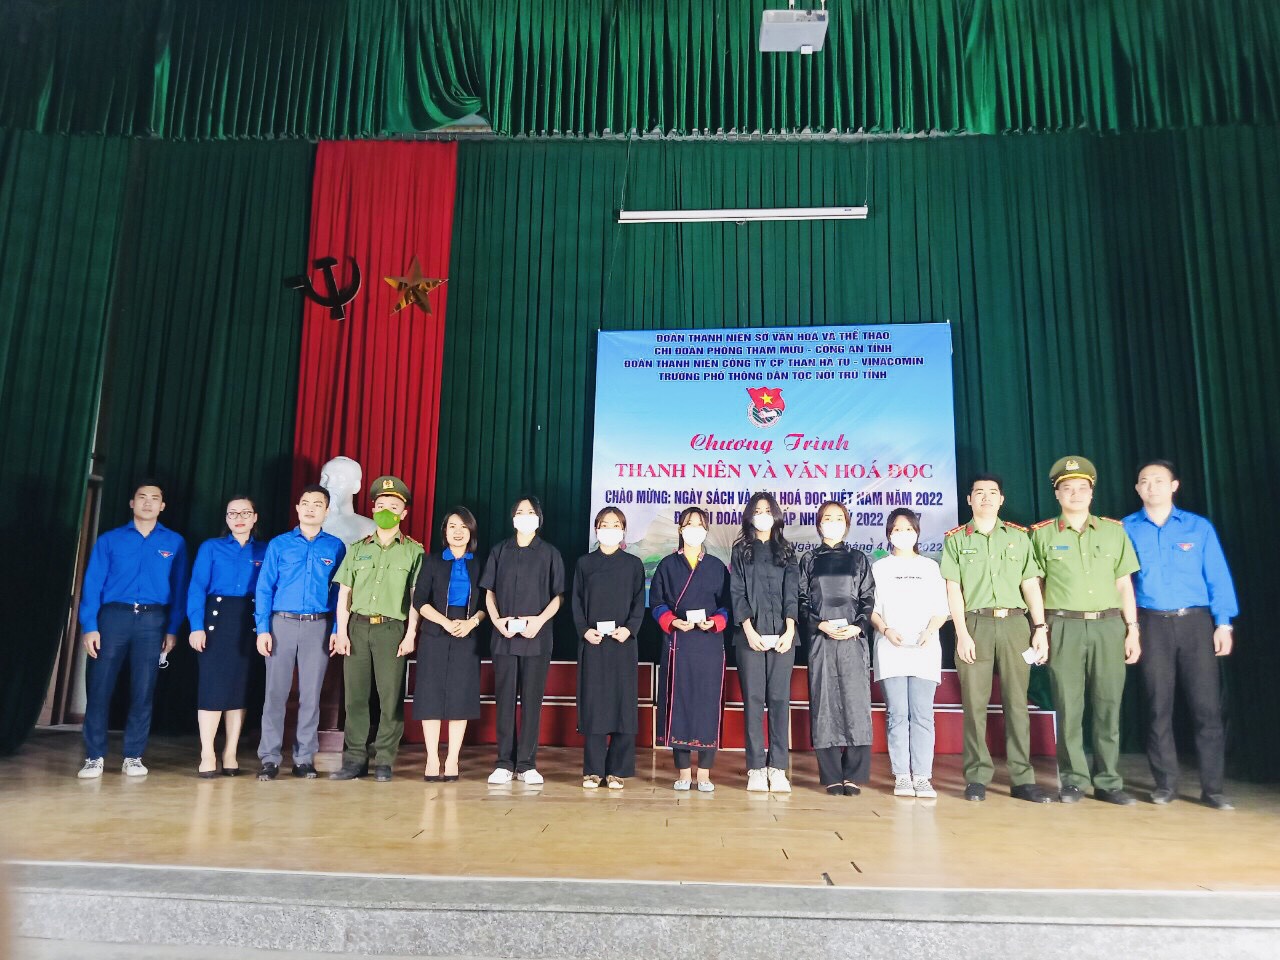 Chương trình “Thanh niên và Văn hóa đọc” chào mừng Ngày sách và Văn hóa đọc Việt Nam lần thứ I năm 2022